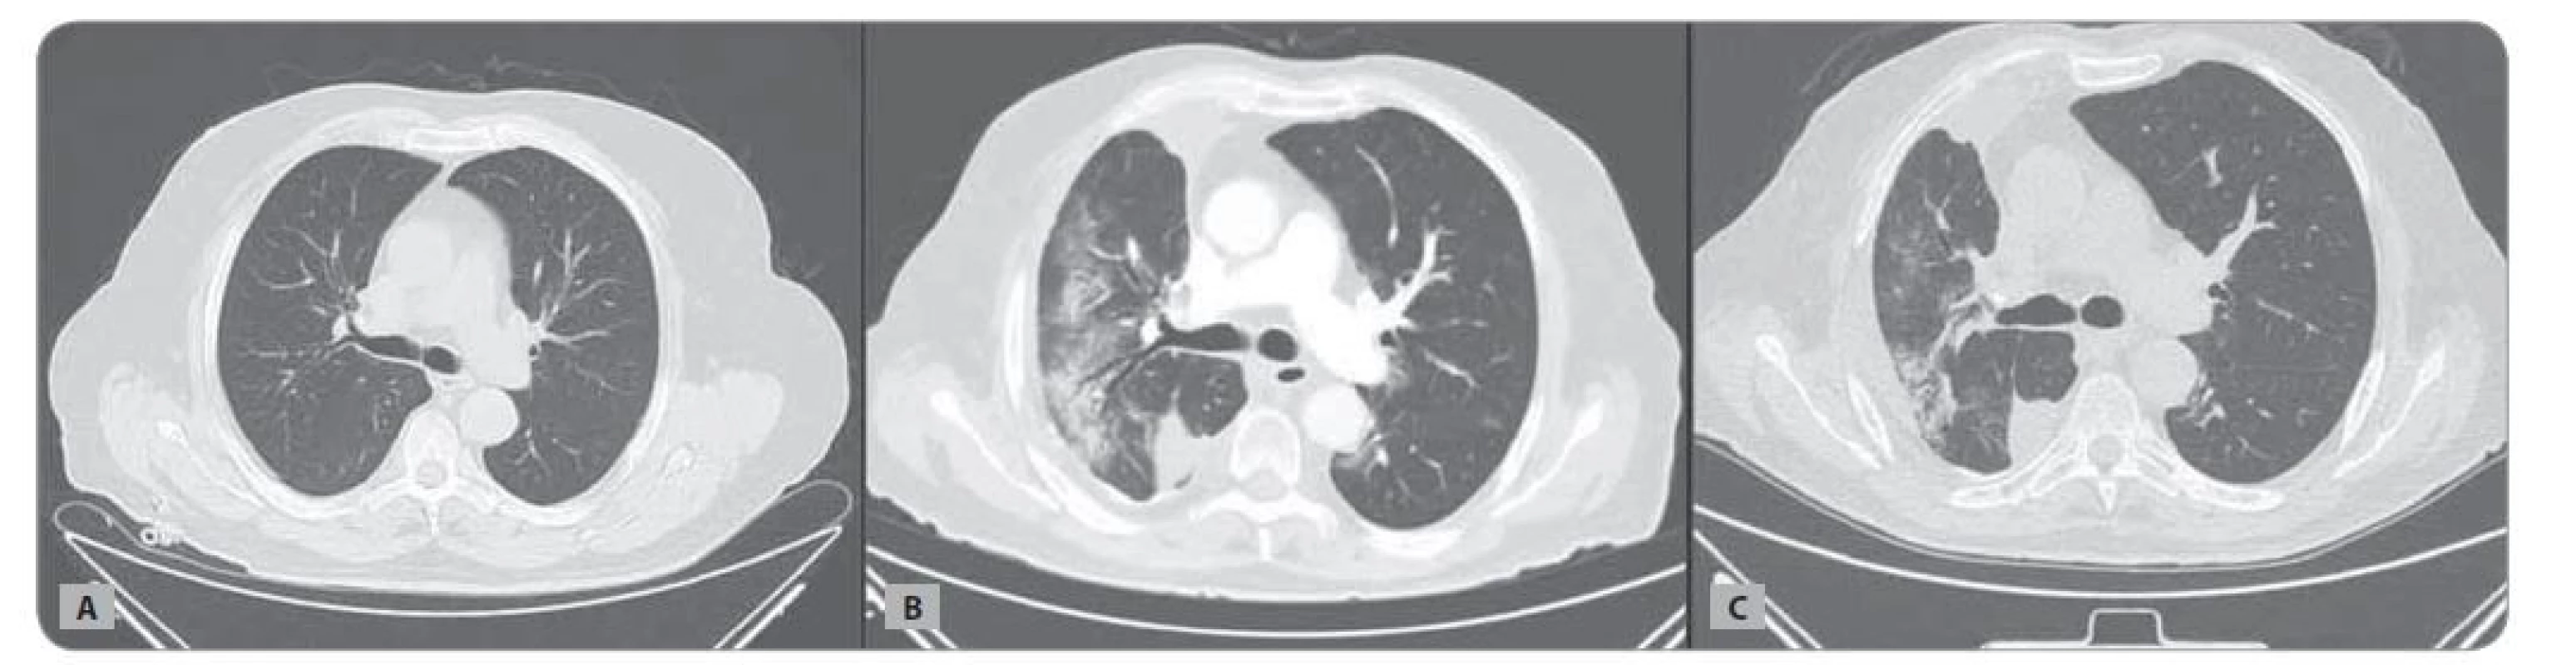 CT hrudníku nemocného z Kazuistiky 1: A) v době zahájení léčby; B) v době pneumonie COVID-19; C) v odstupu 3 měsíců.